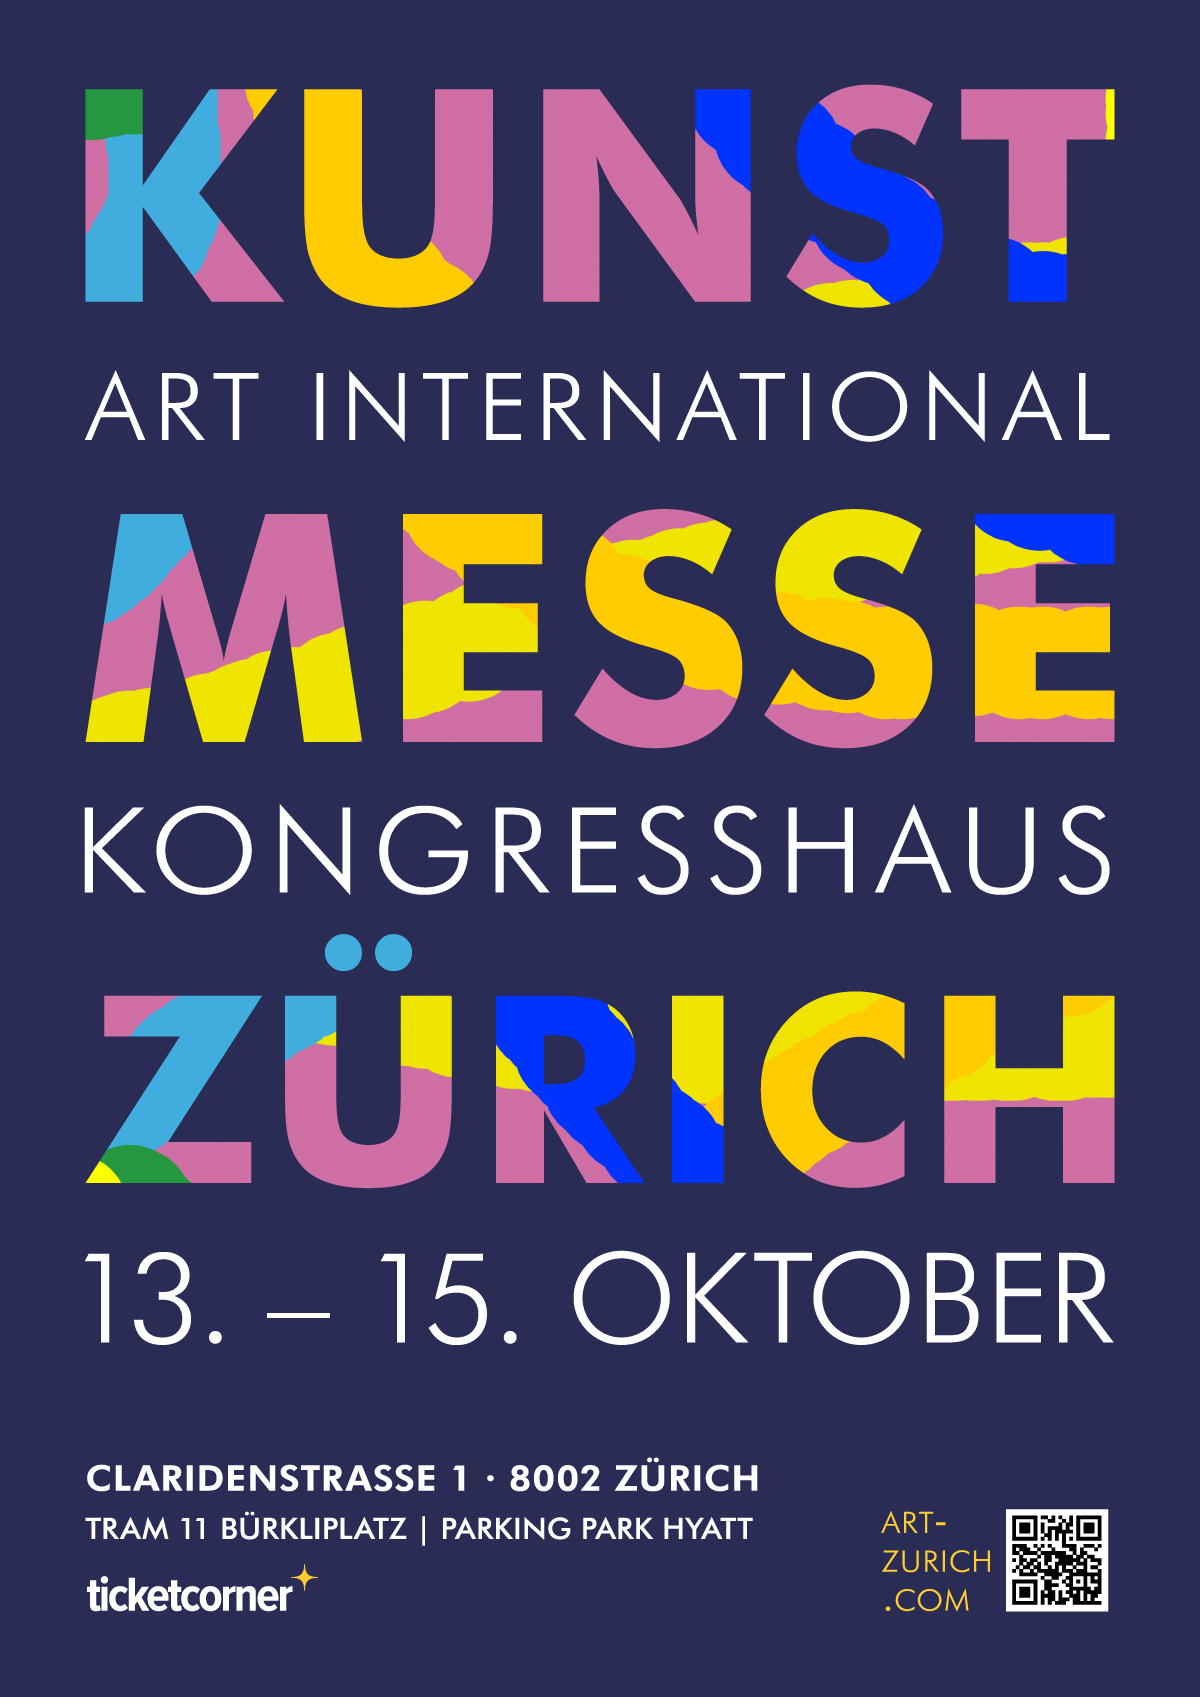 ART INTERNATIONAL ZURICH - Contemporary Art Fair